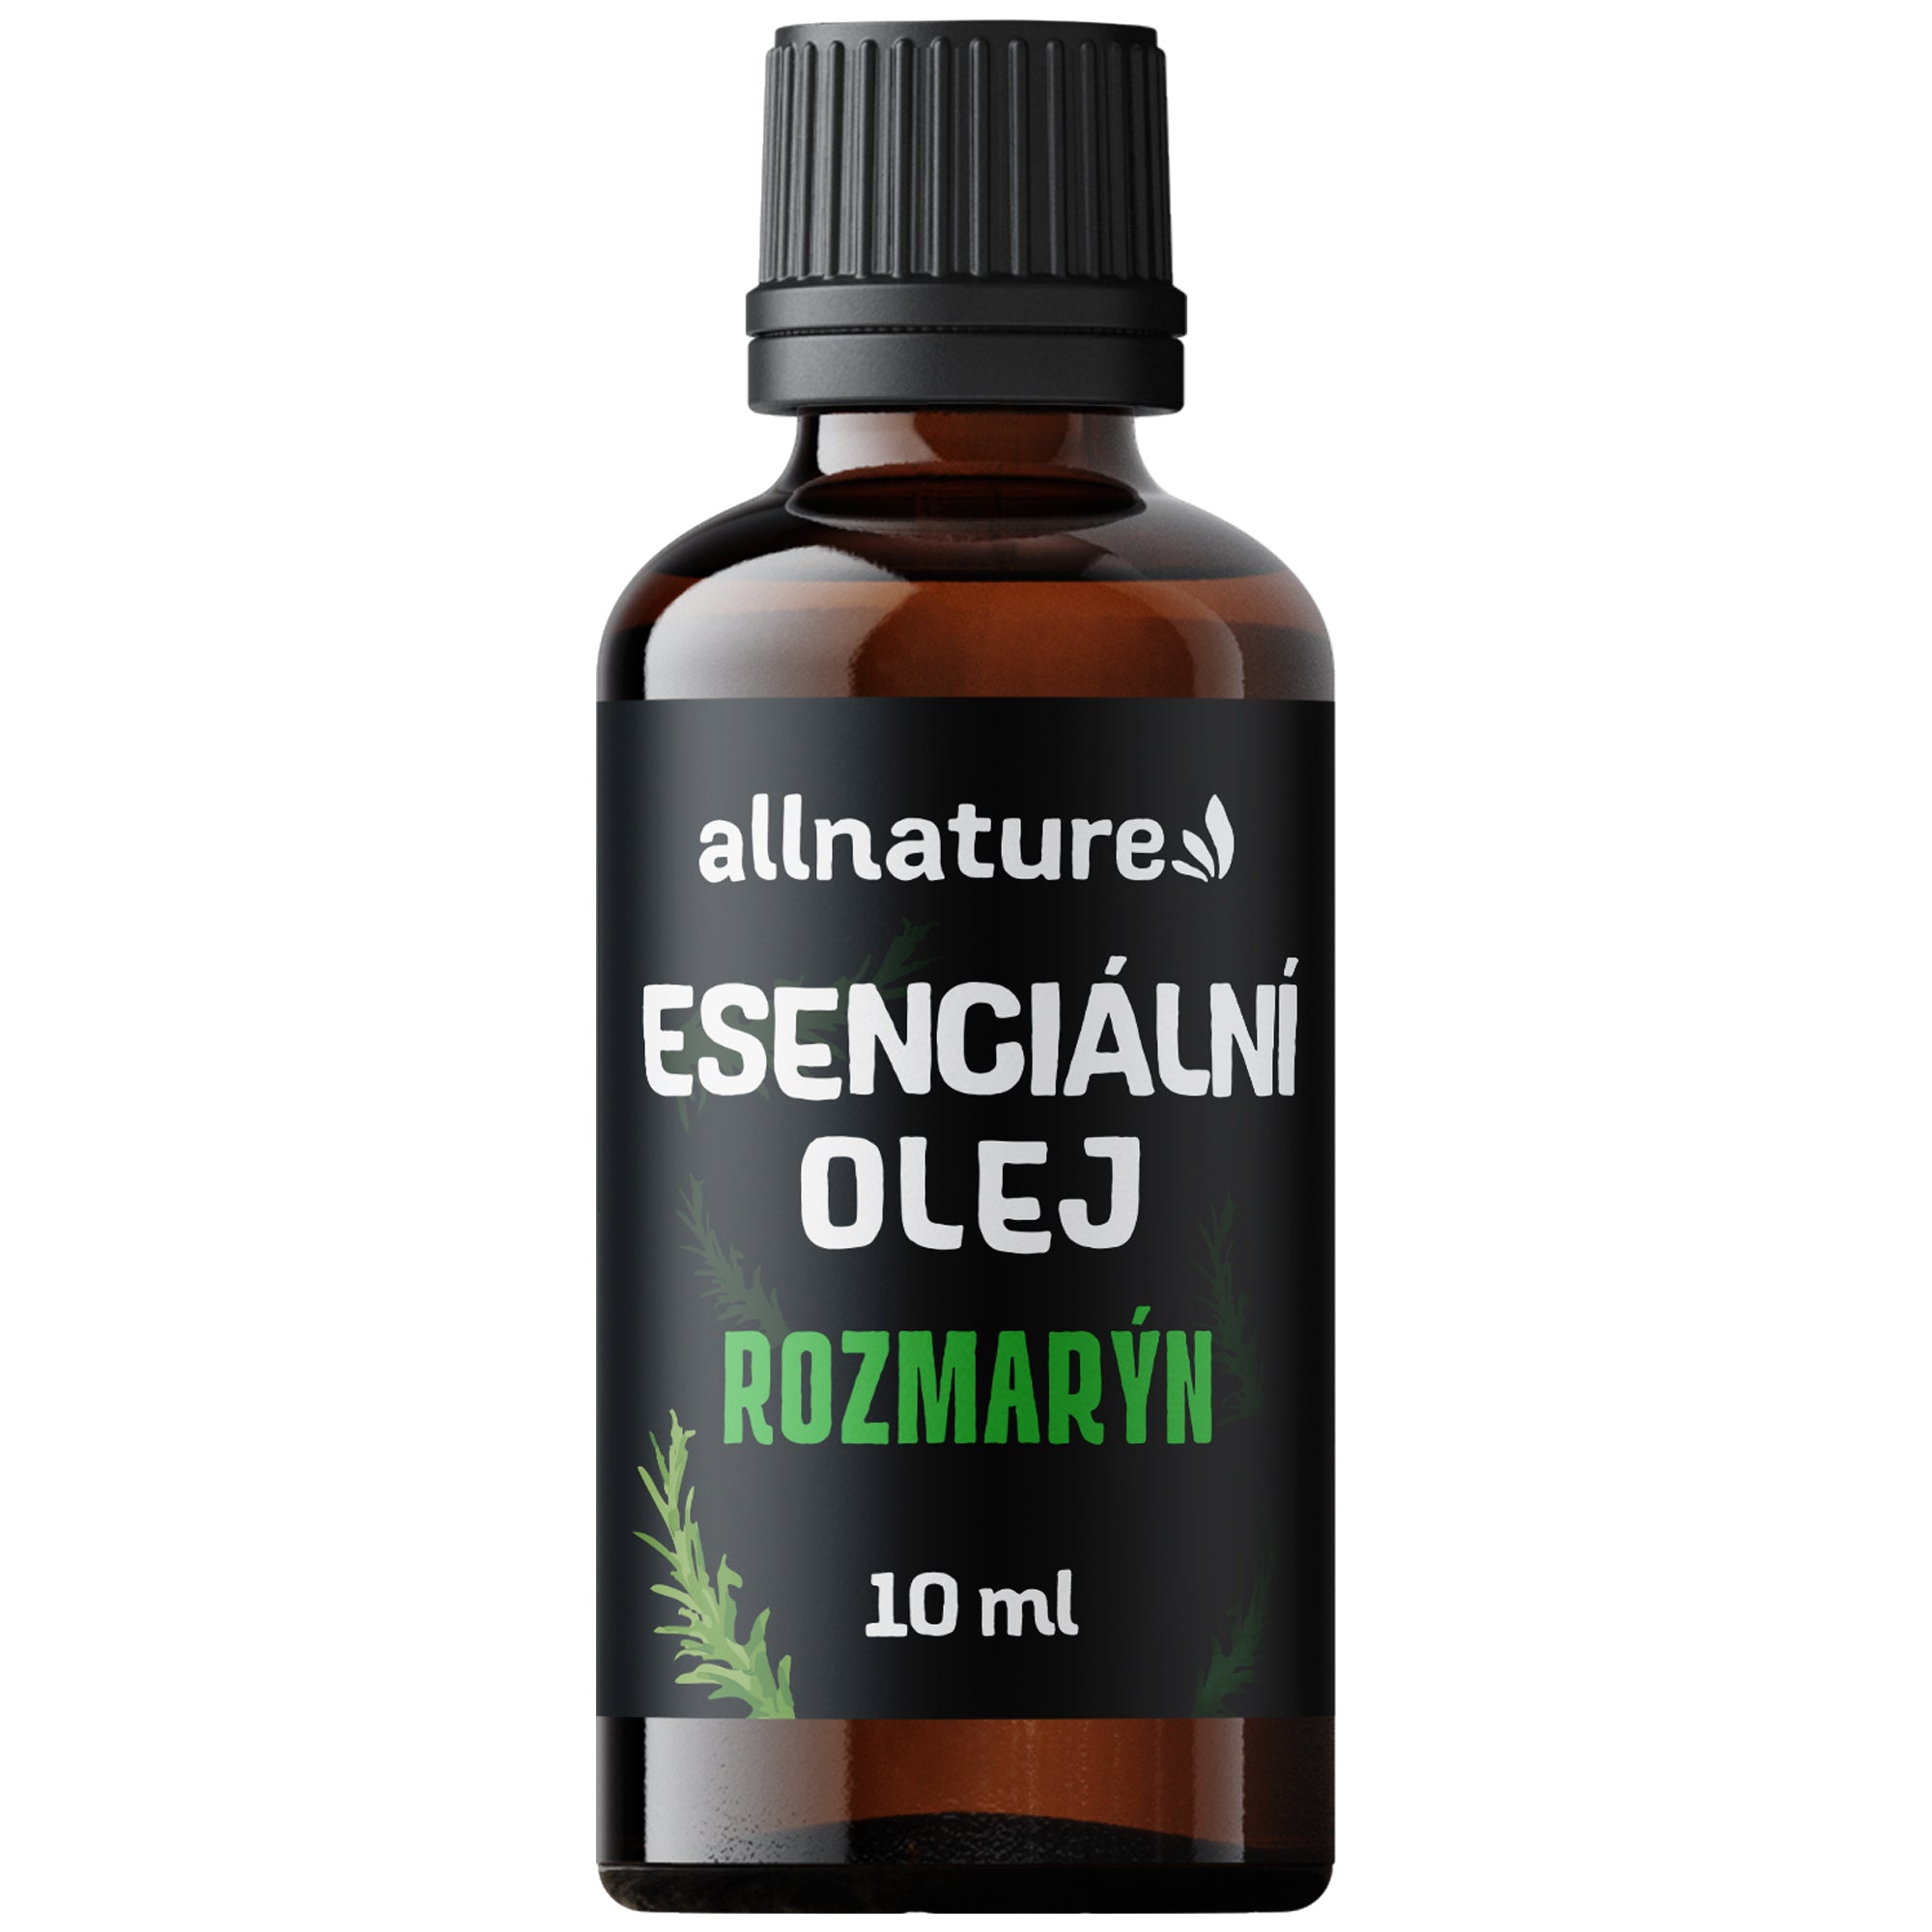 Allnature Esenciální olej Rozmarýn (10 ml) - energizuje a podporuje koncentraci Allnature